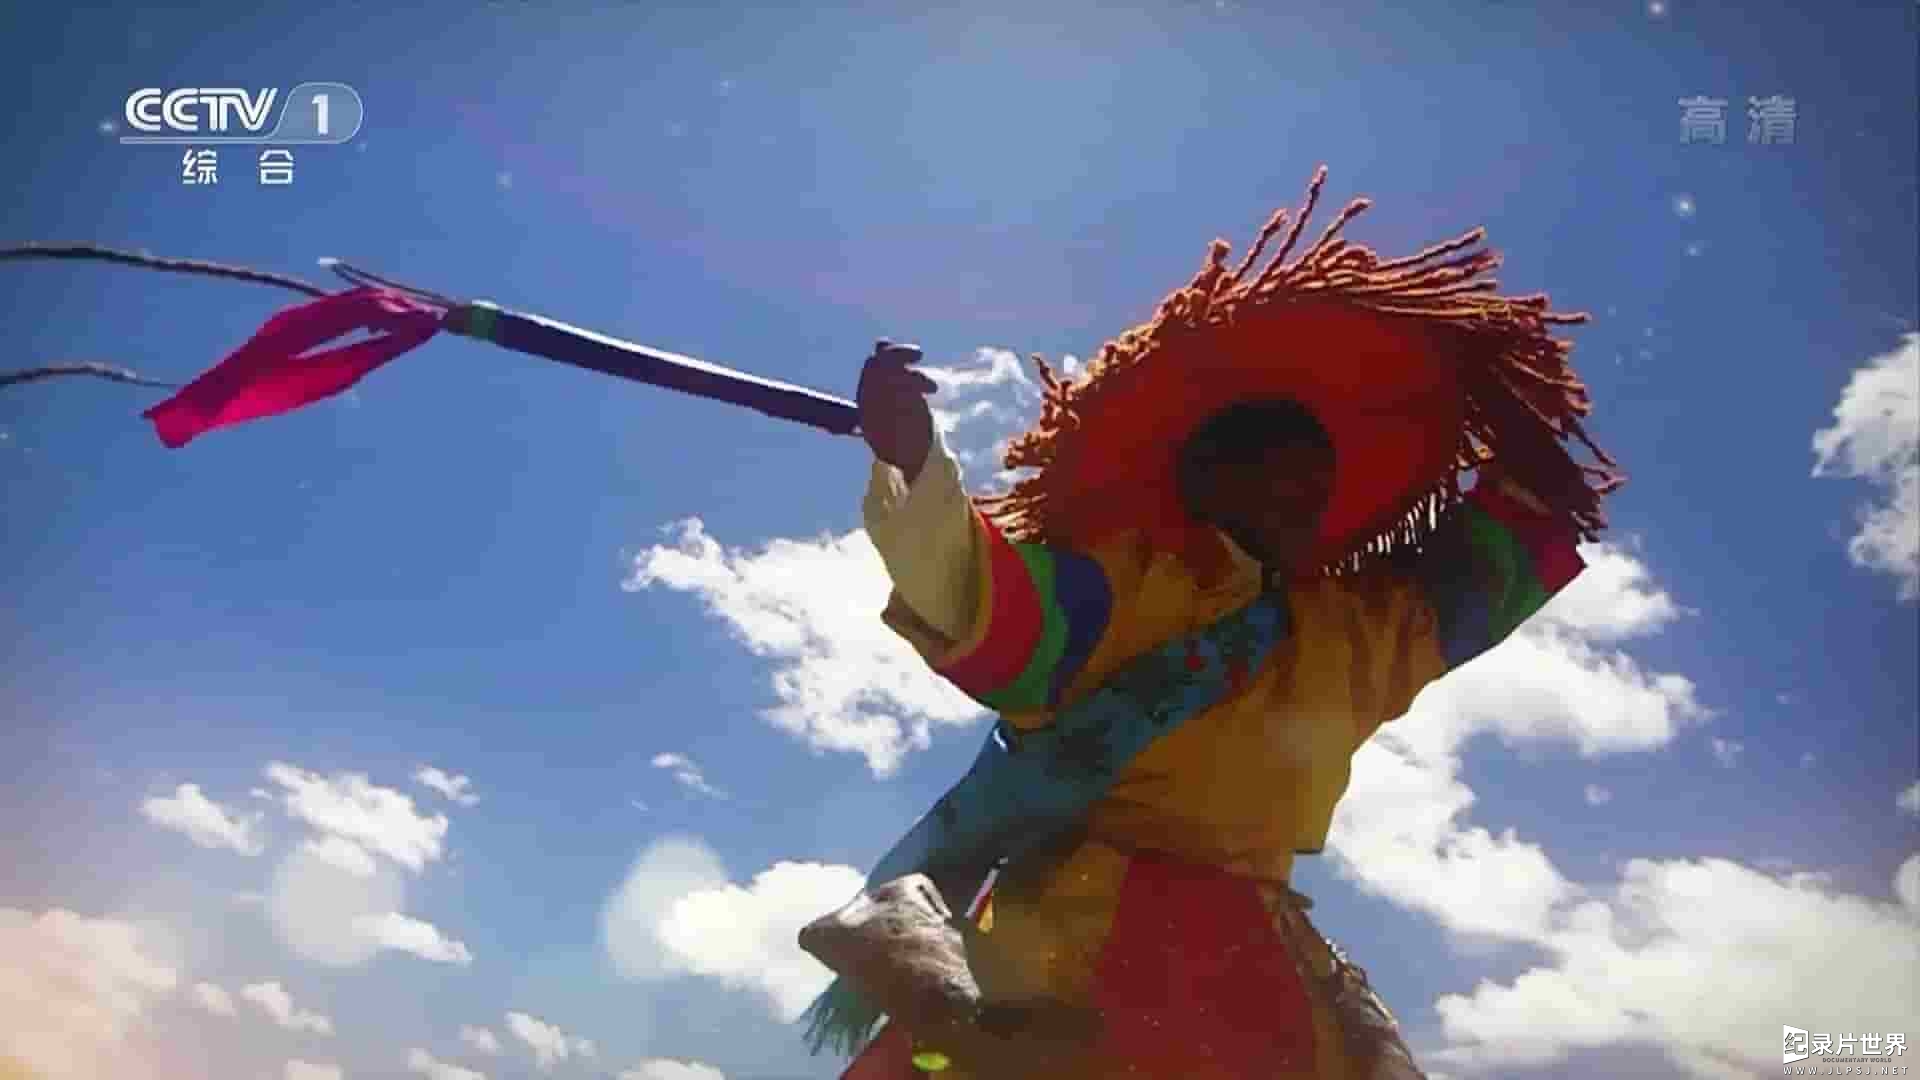  央视纪录片《一跃跨千年——西藏和平解放70年 2021》全2集